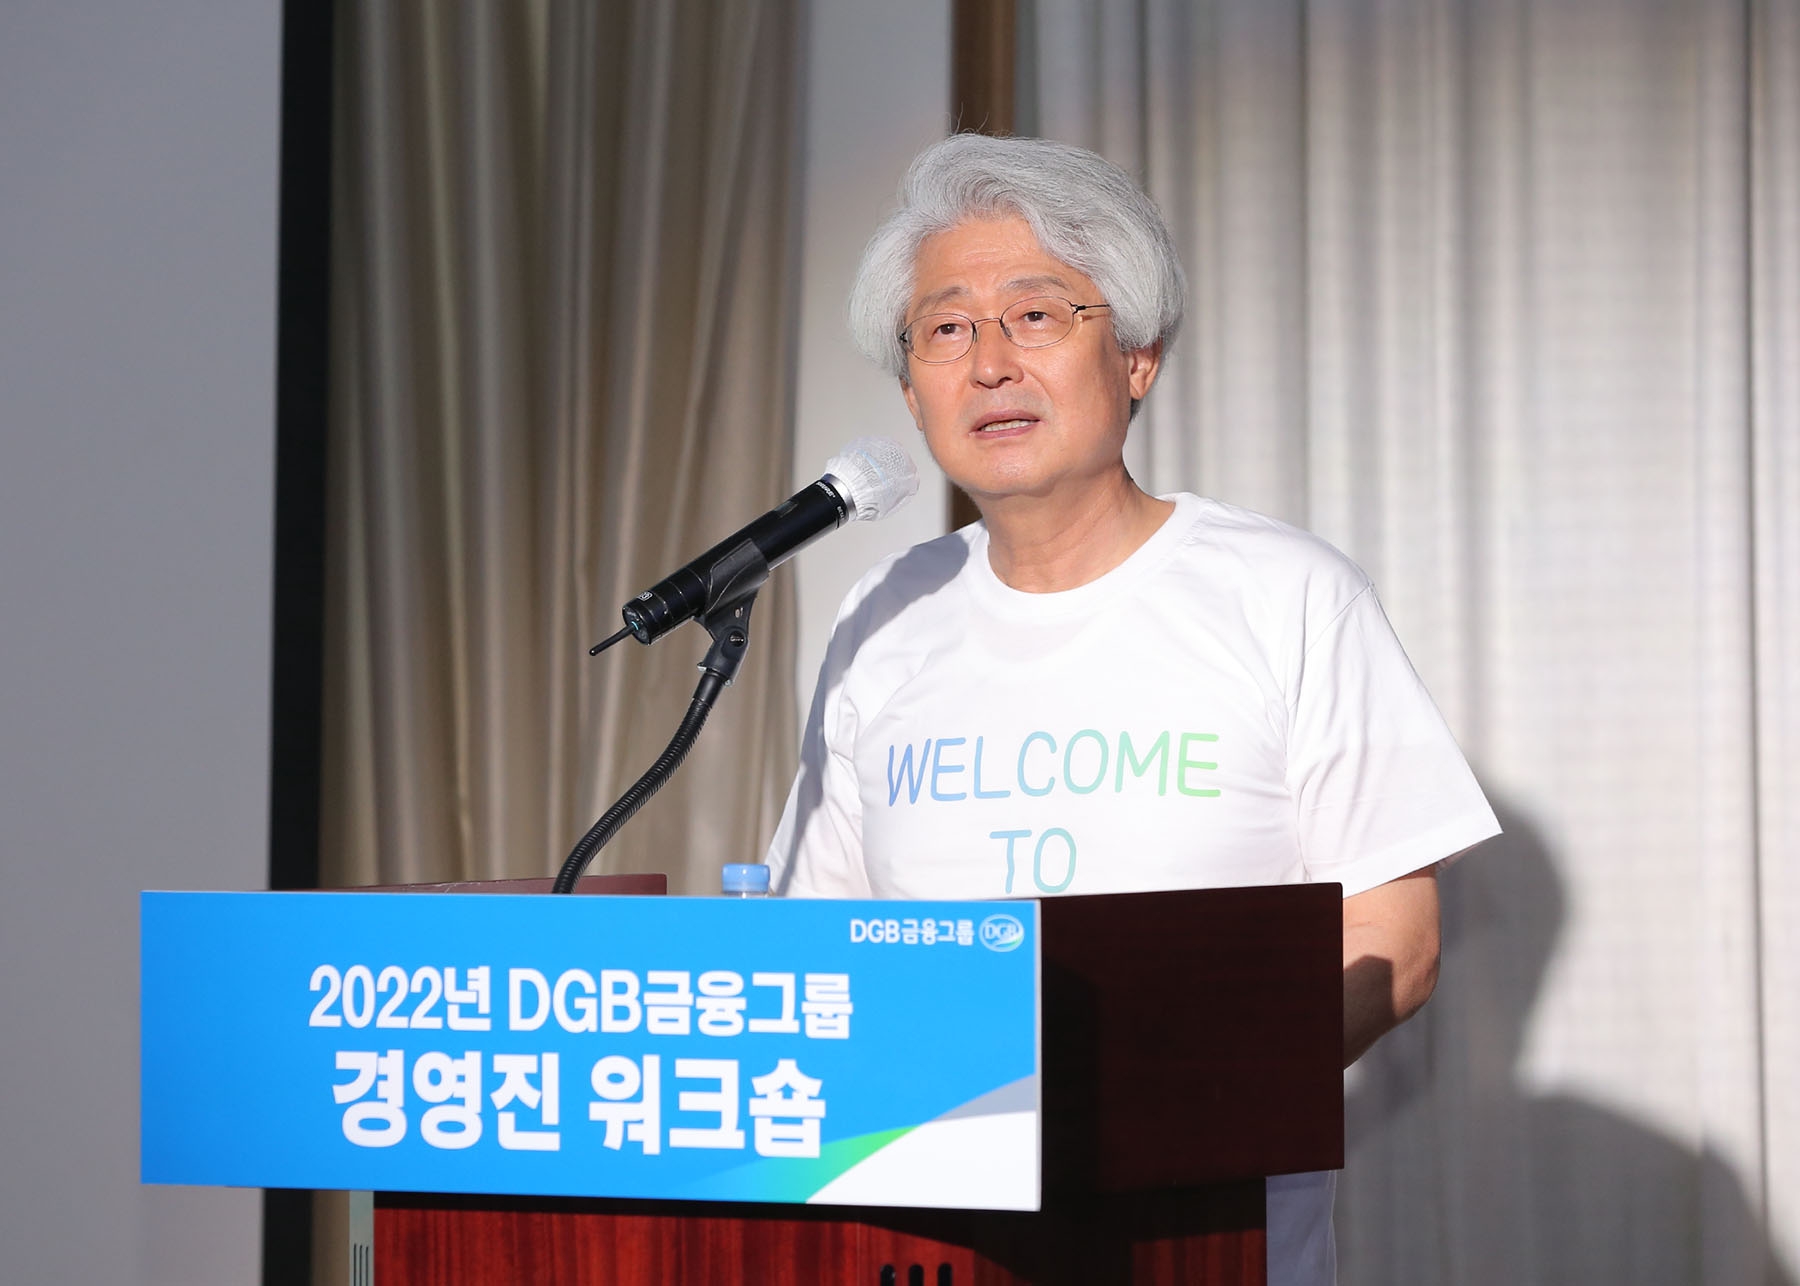 김태오 DGB금융그룹 회장이 ‘2022년 경영진 워크숍’에서 인사말을 하고 있다. / 사진제공=DGB금융